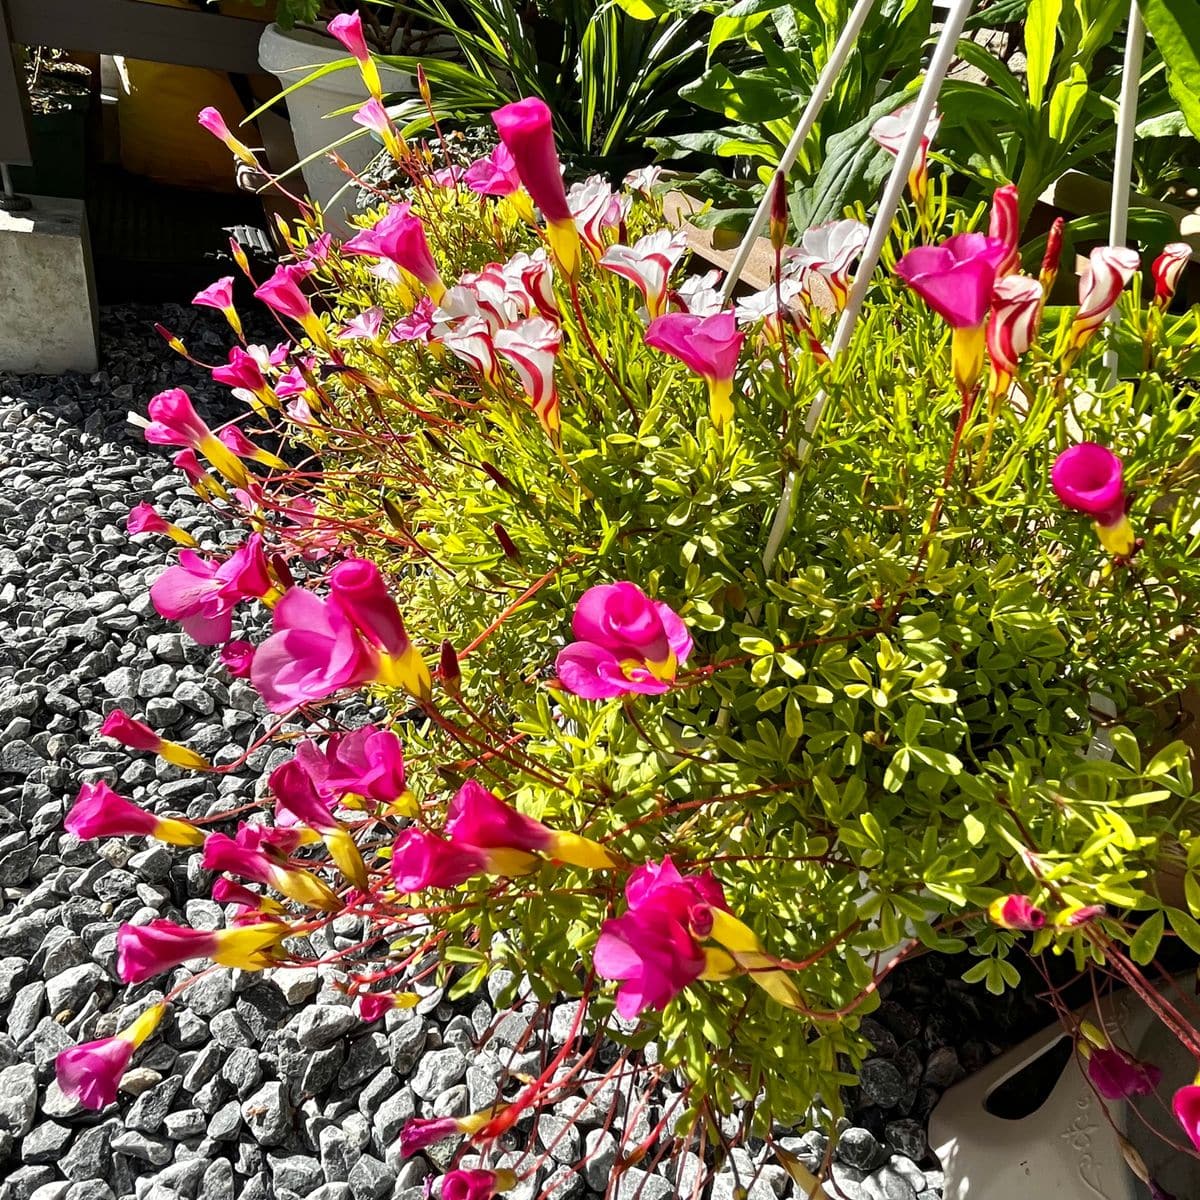 オキザリス 桃の輝き Oxalis 039 Momo N 庭に咲く花season19 のアルバム みんなの趣味の園芸